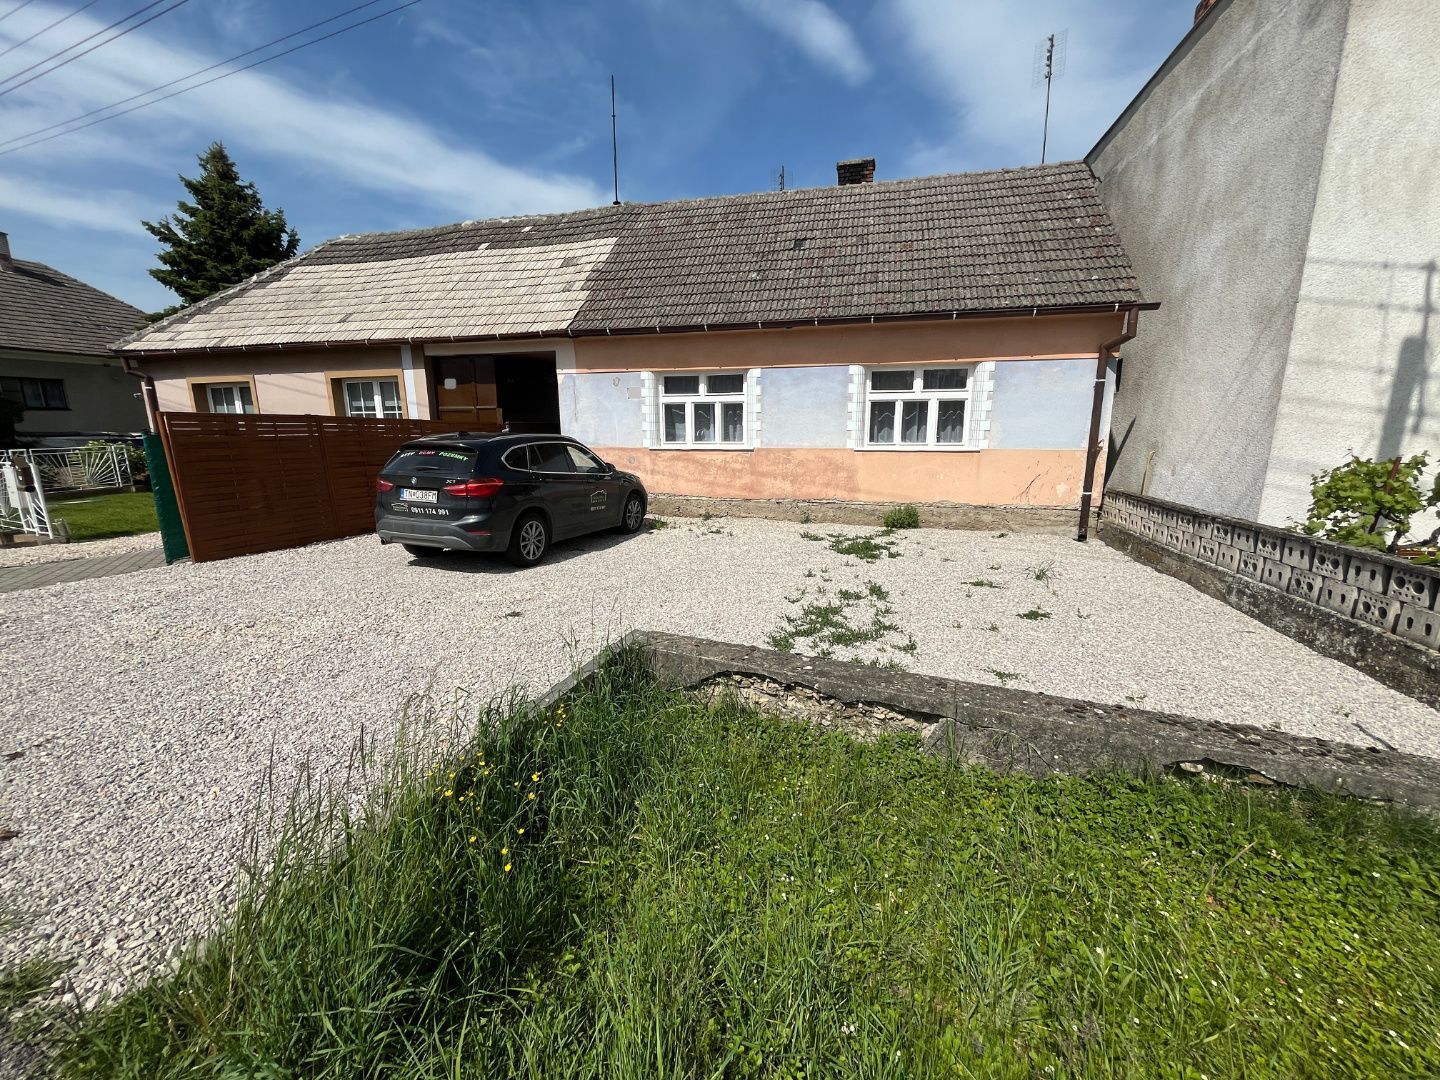 Stavebný pozemok 1187 m2 so starším domom v  Chocholnej-Velčiciach